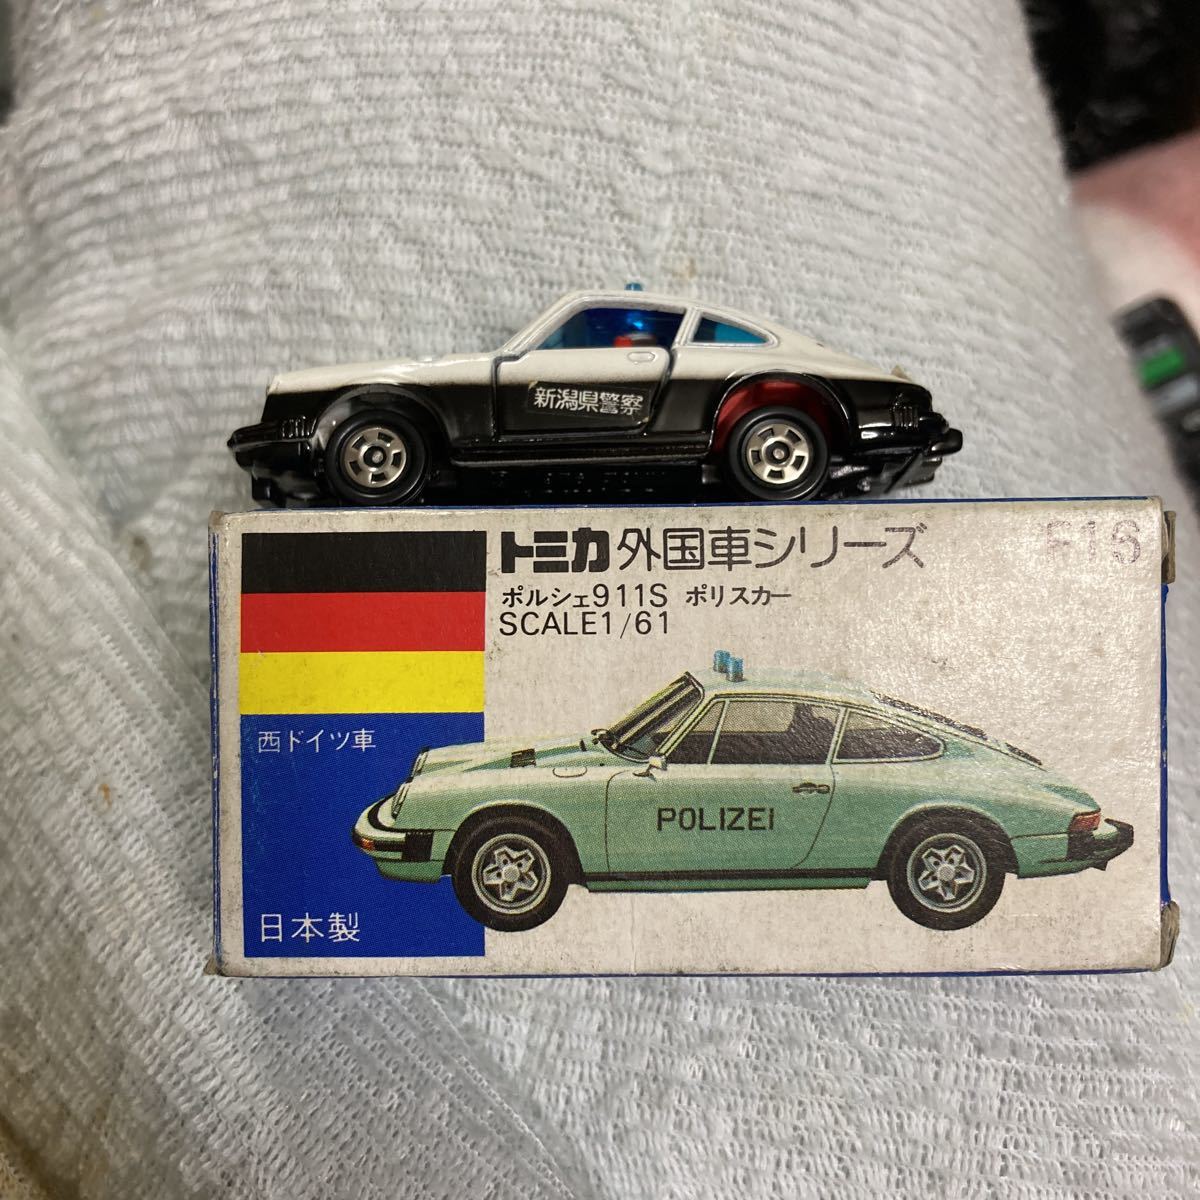 トミカポルシェ911sパトカー新潟県警察青箱f16